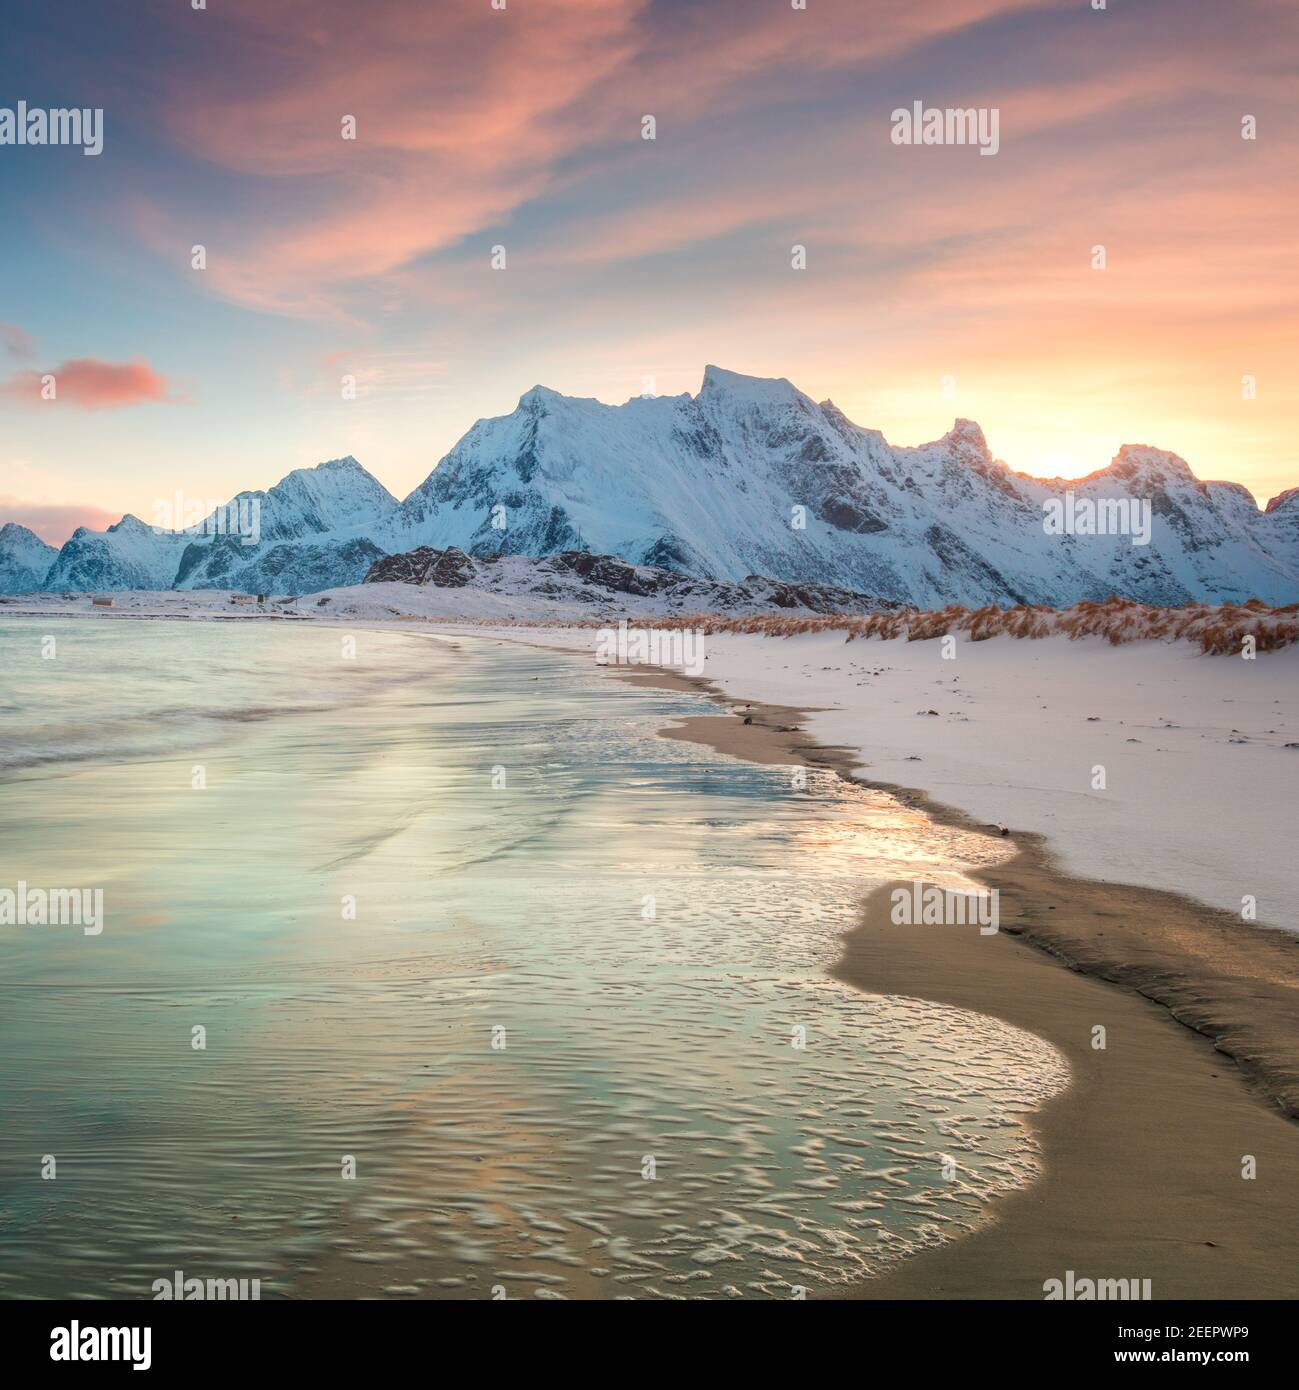 Incredibile mattina invernale sul mare e sulle montagne, colorata alba settentrionale e luce solare nelle nuvole rosa. Isole Lofoten, Norvegia, Europa Foto Stock